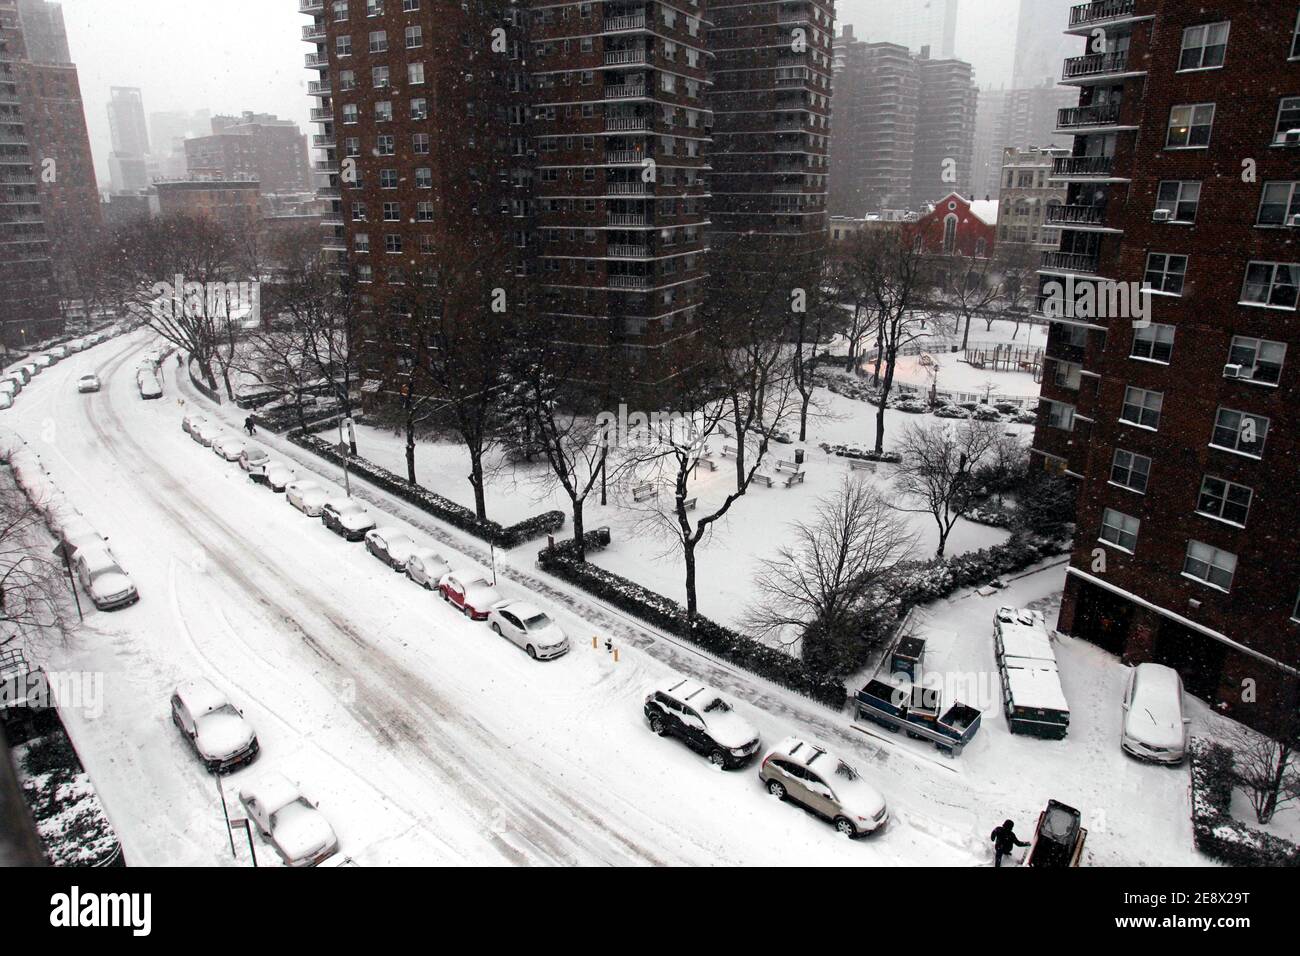 New York City, New York, Usa. Januar 2021. Schnee fällt auf den Chelsea-Teil von Manhattan, als ein großer Schneesturm die New York City Gegend heute überdeckte. Es wird vorhergesagt, dass die Stadt bis zu zwei Fuß Schnee bekommen könnte, bevor der Sturm nachlässt. Quelle: Adam Stoltman/Alamy Live News Stockfoto